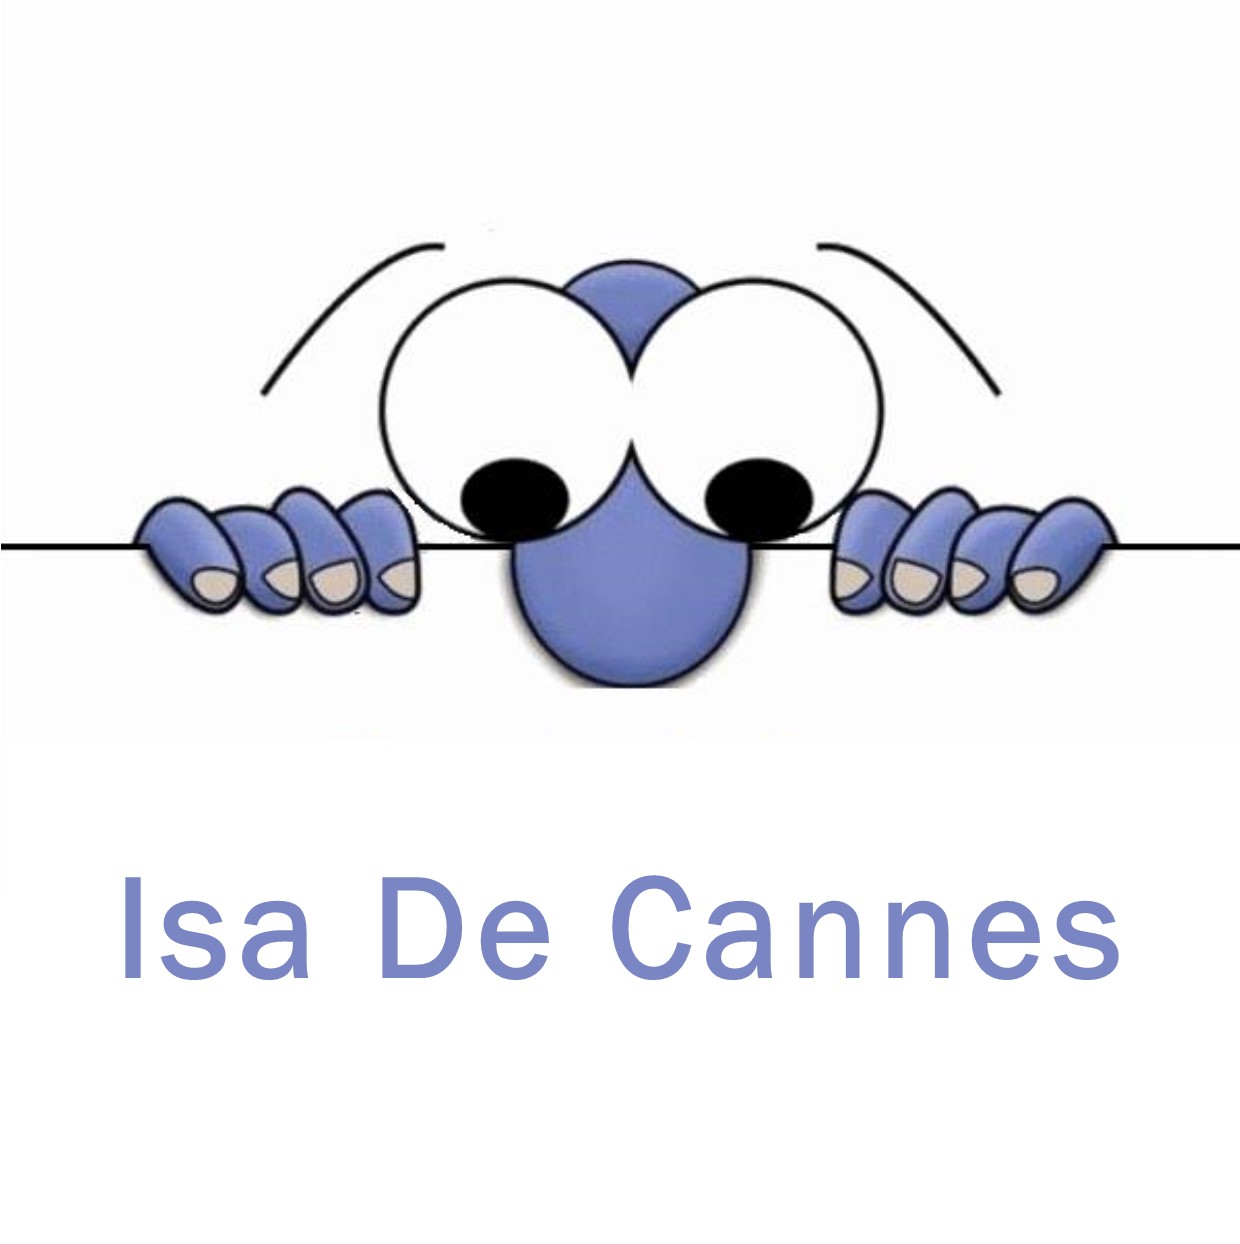 Isa De cannes